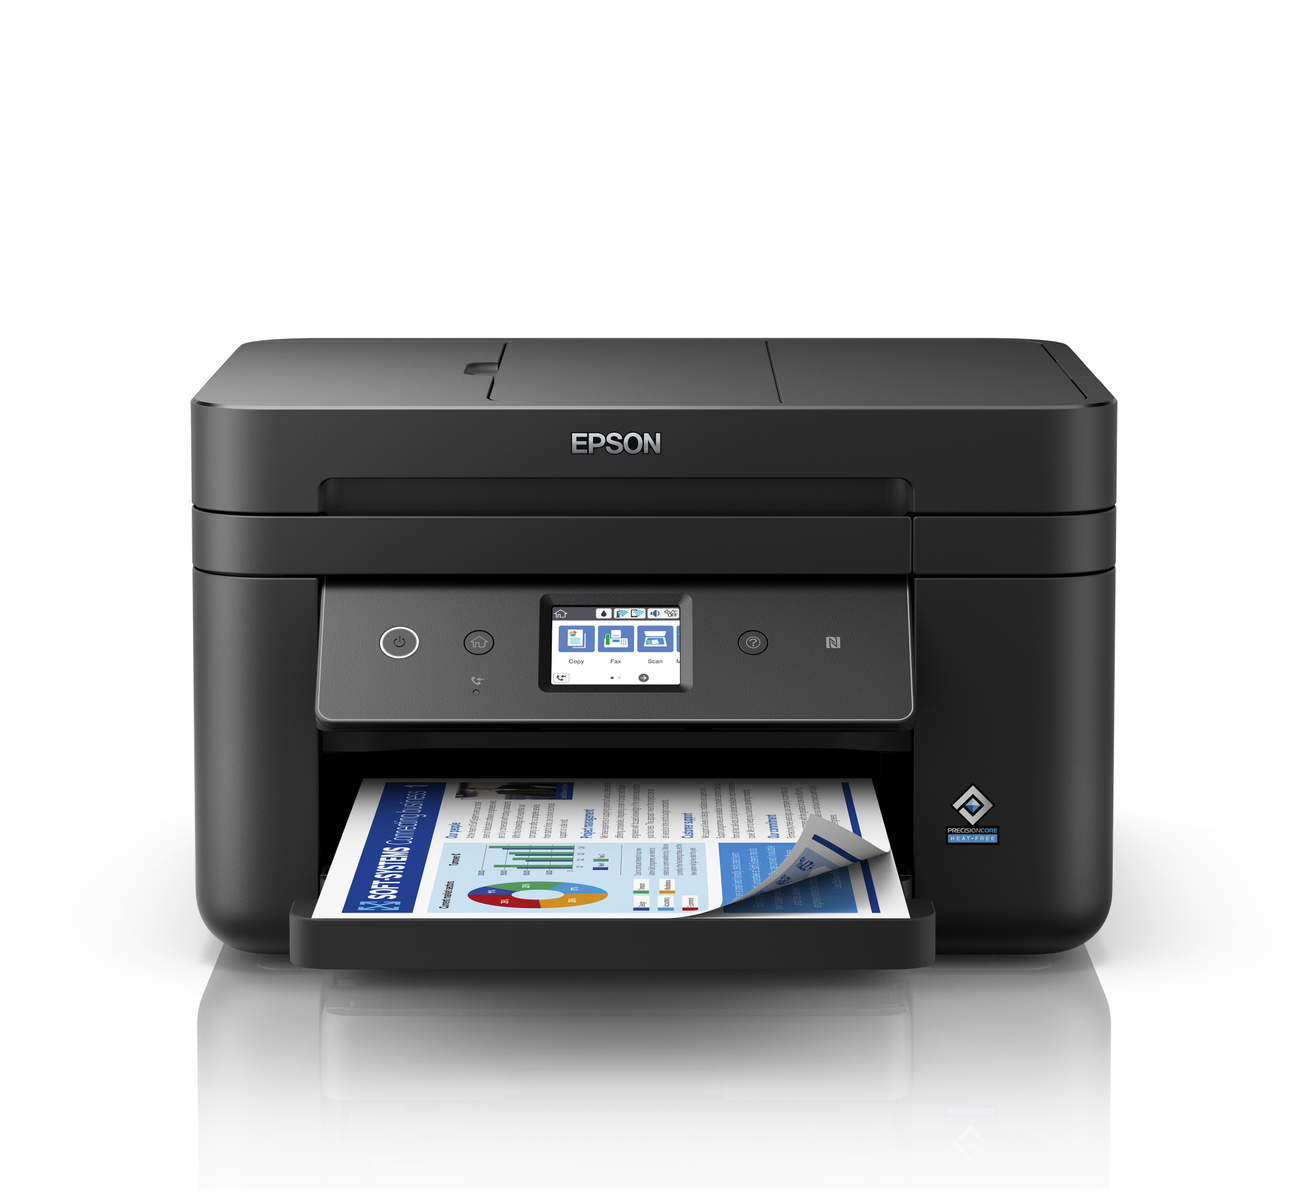 EPSON WF-2880DWF Tintenstrahldruck WLAN Drucker, 4in1 Netzwerkfähig Tintenstrahl-Multifunktionsdrucker